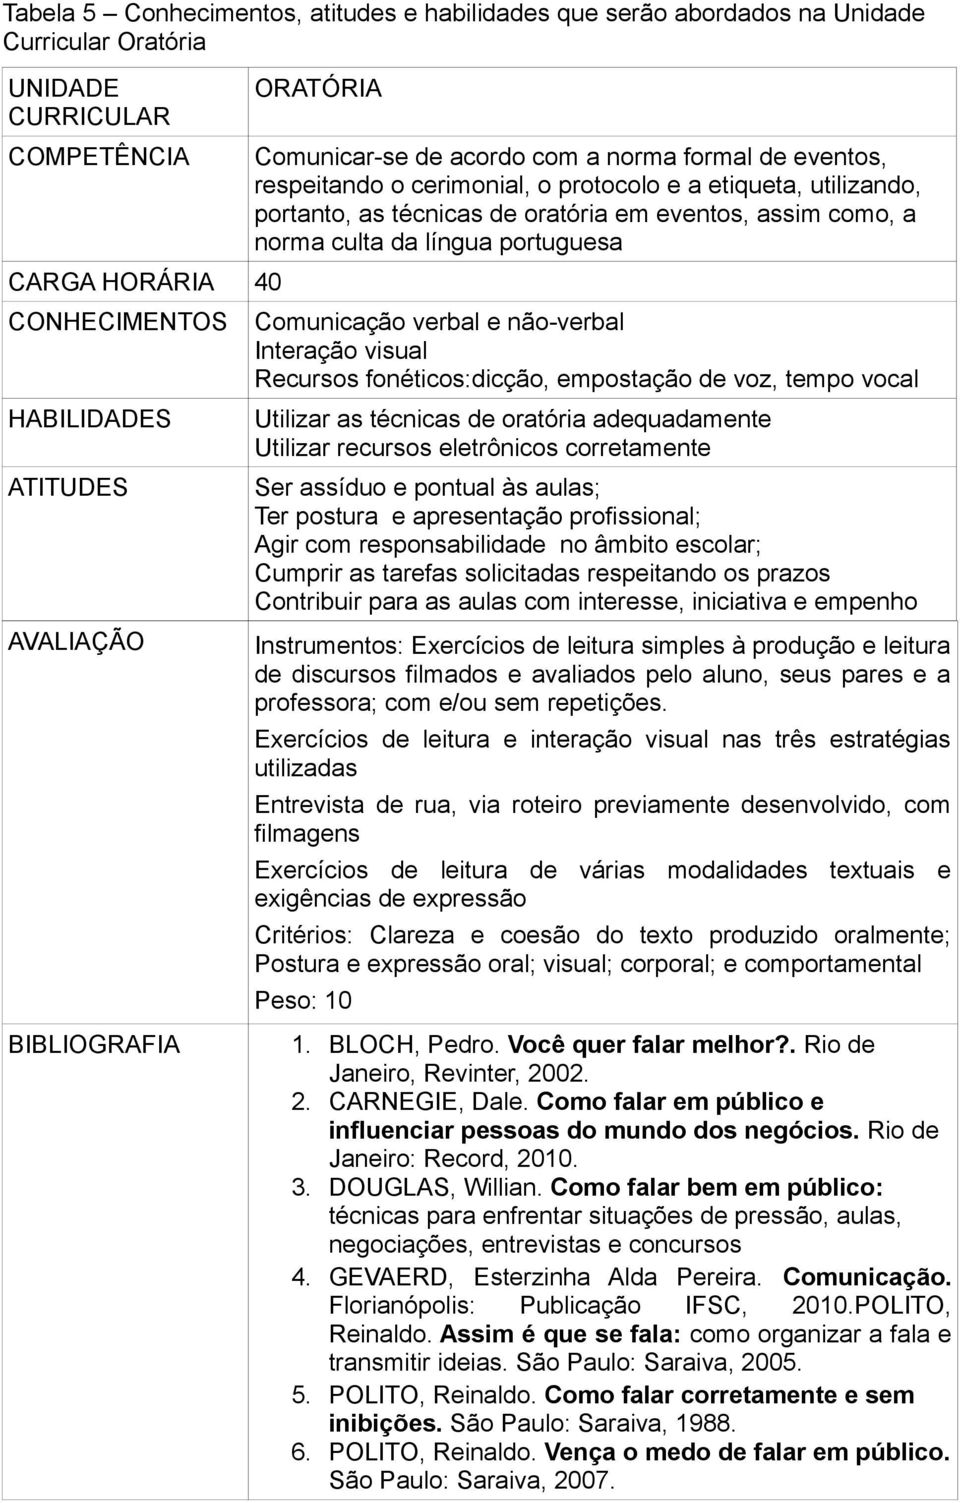 portuguesa Comunicação verbal e não-verbal Interação visual Recursos fonéticos:dicção, empostação de voz, tempo vocal Utilizar as técnicas de oratória adequadamente Utilizar recursos eletrônicos